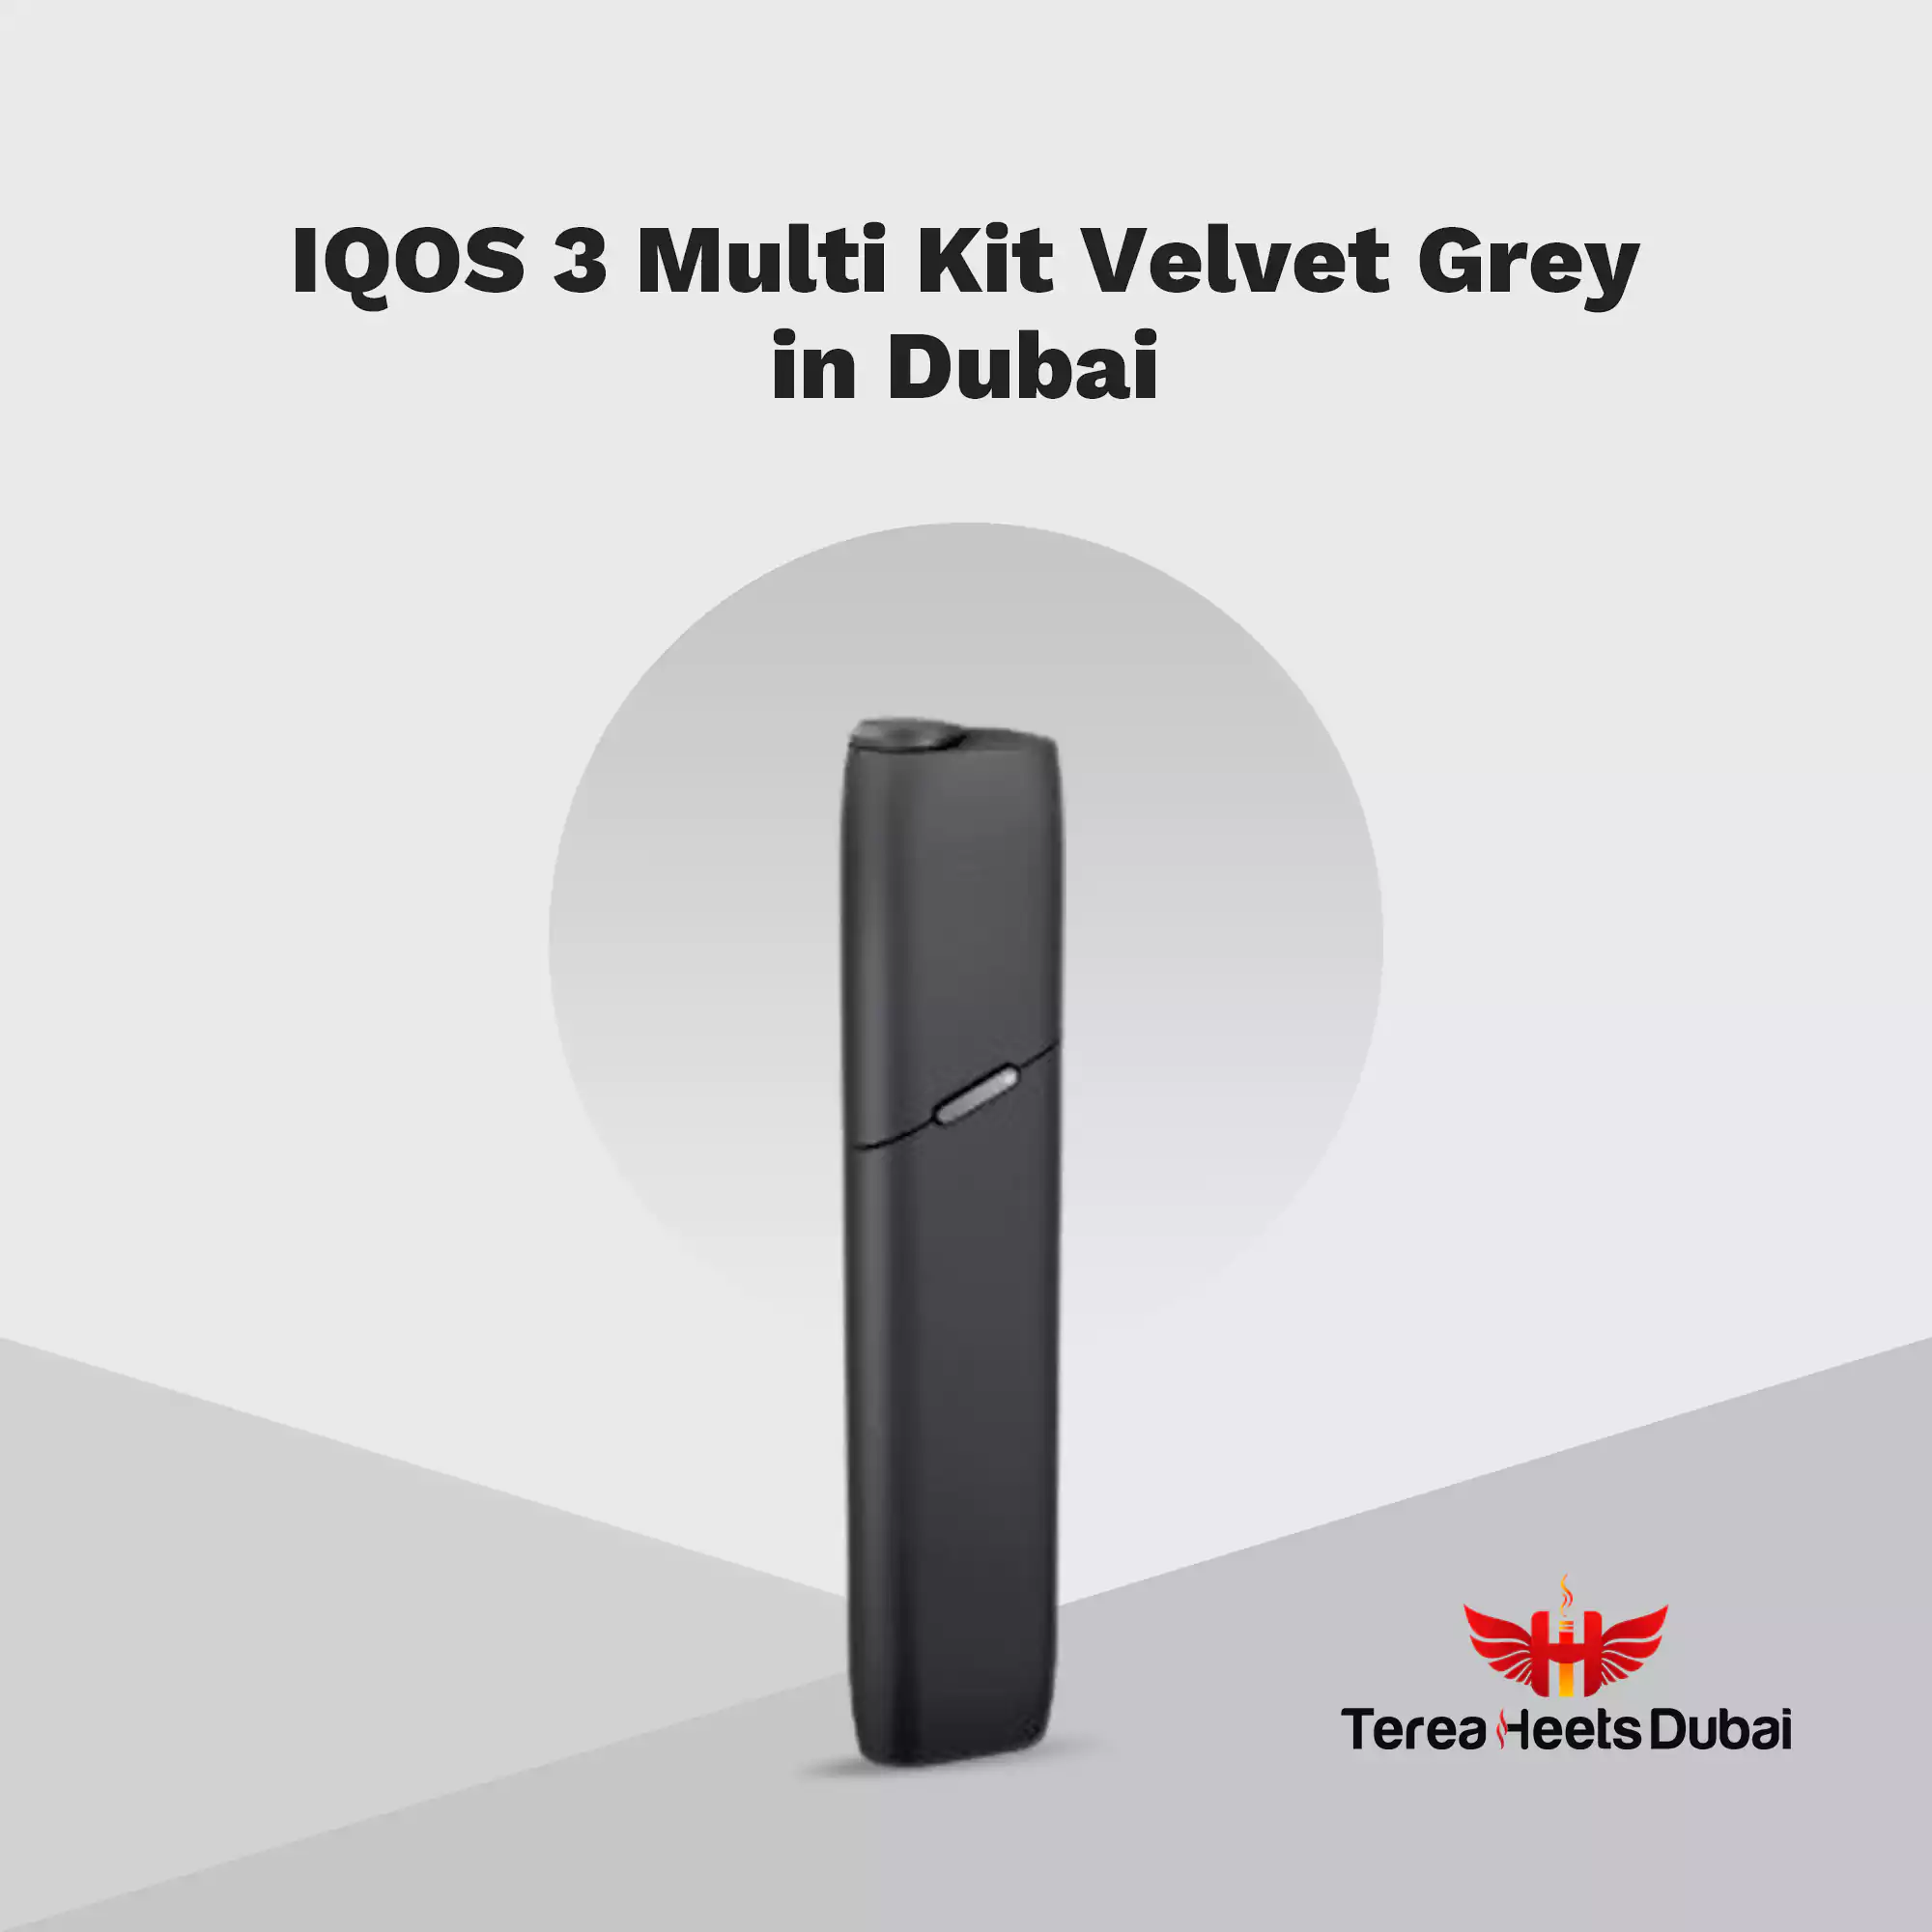 Best IQOS 3 Multi Kit Velvet Grey in Dubai